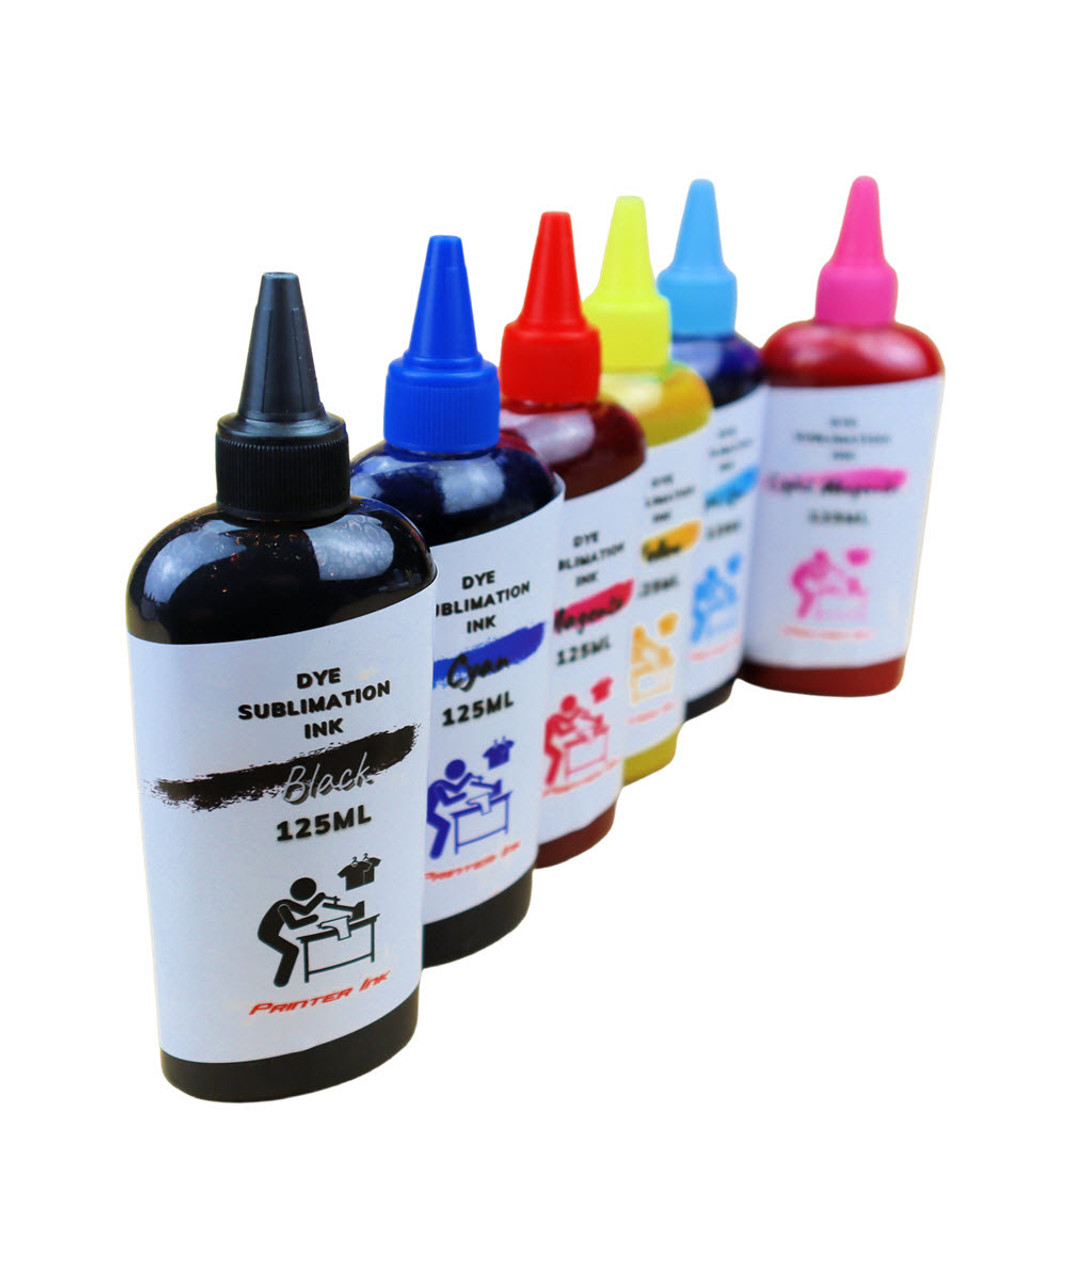 Dye Sublimation Ink 6-125ml bottles for Epson Artisan 1430 Printer